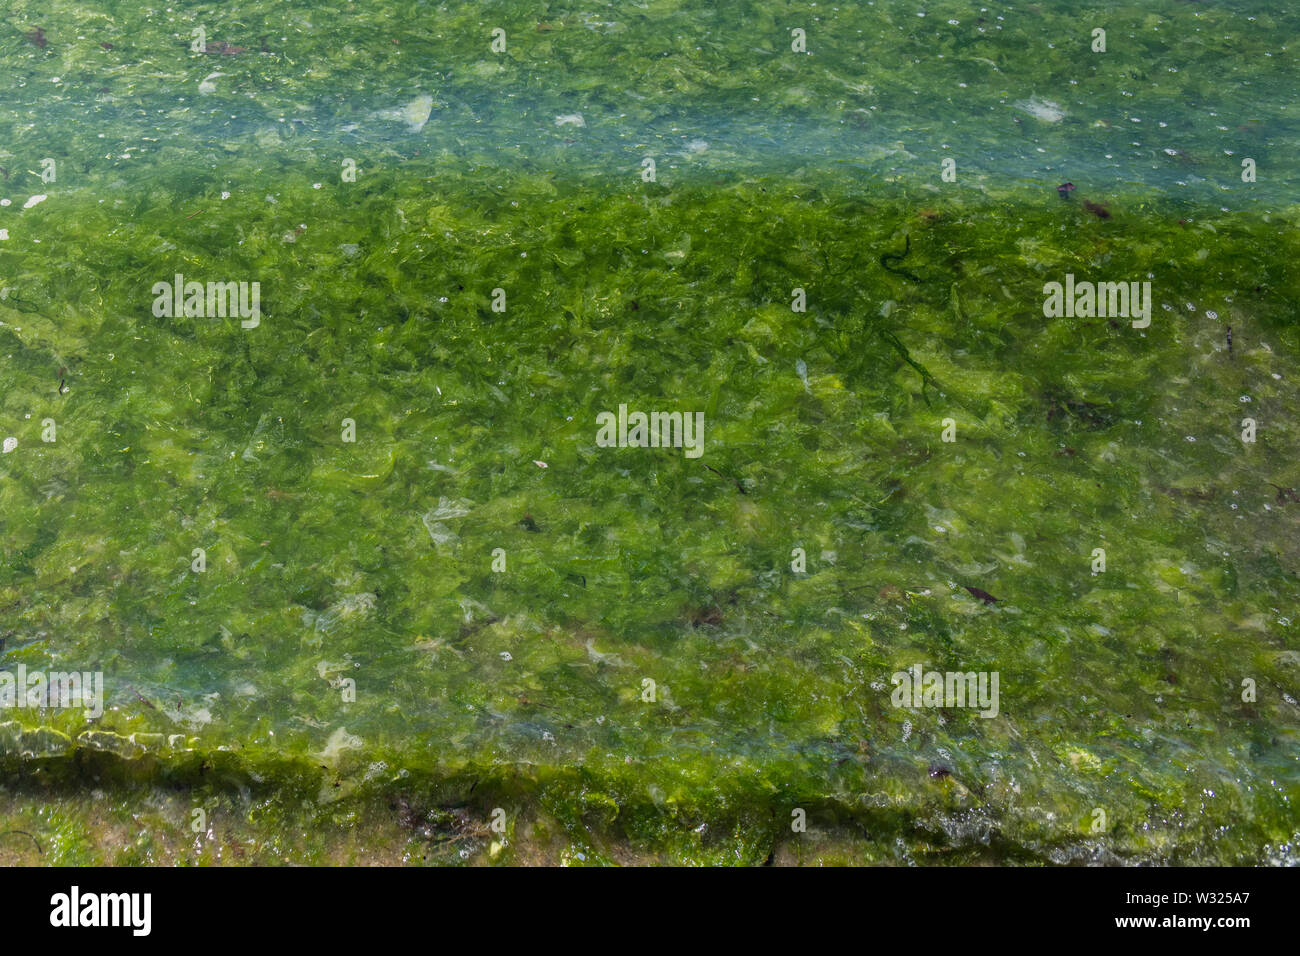 Die grüne Algen Algen Sea Lettuce/Ulva lactuca an Land auf einem Strand gespült und die Drift Linie abgelegt. Angeschwemmte Metapher, gestrandete Konzept. Stockfoto